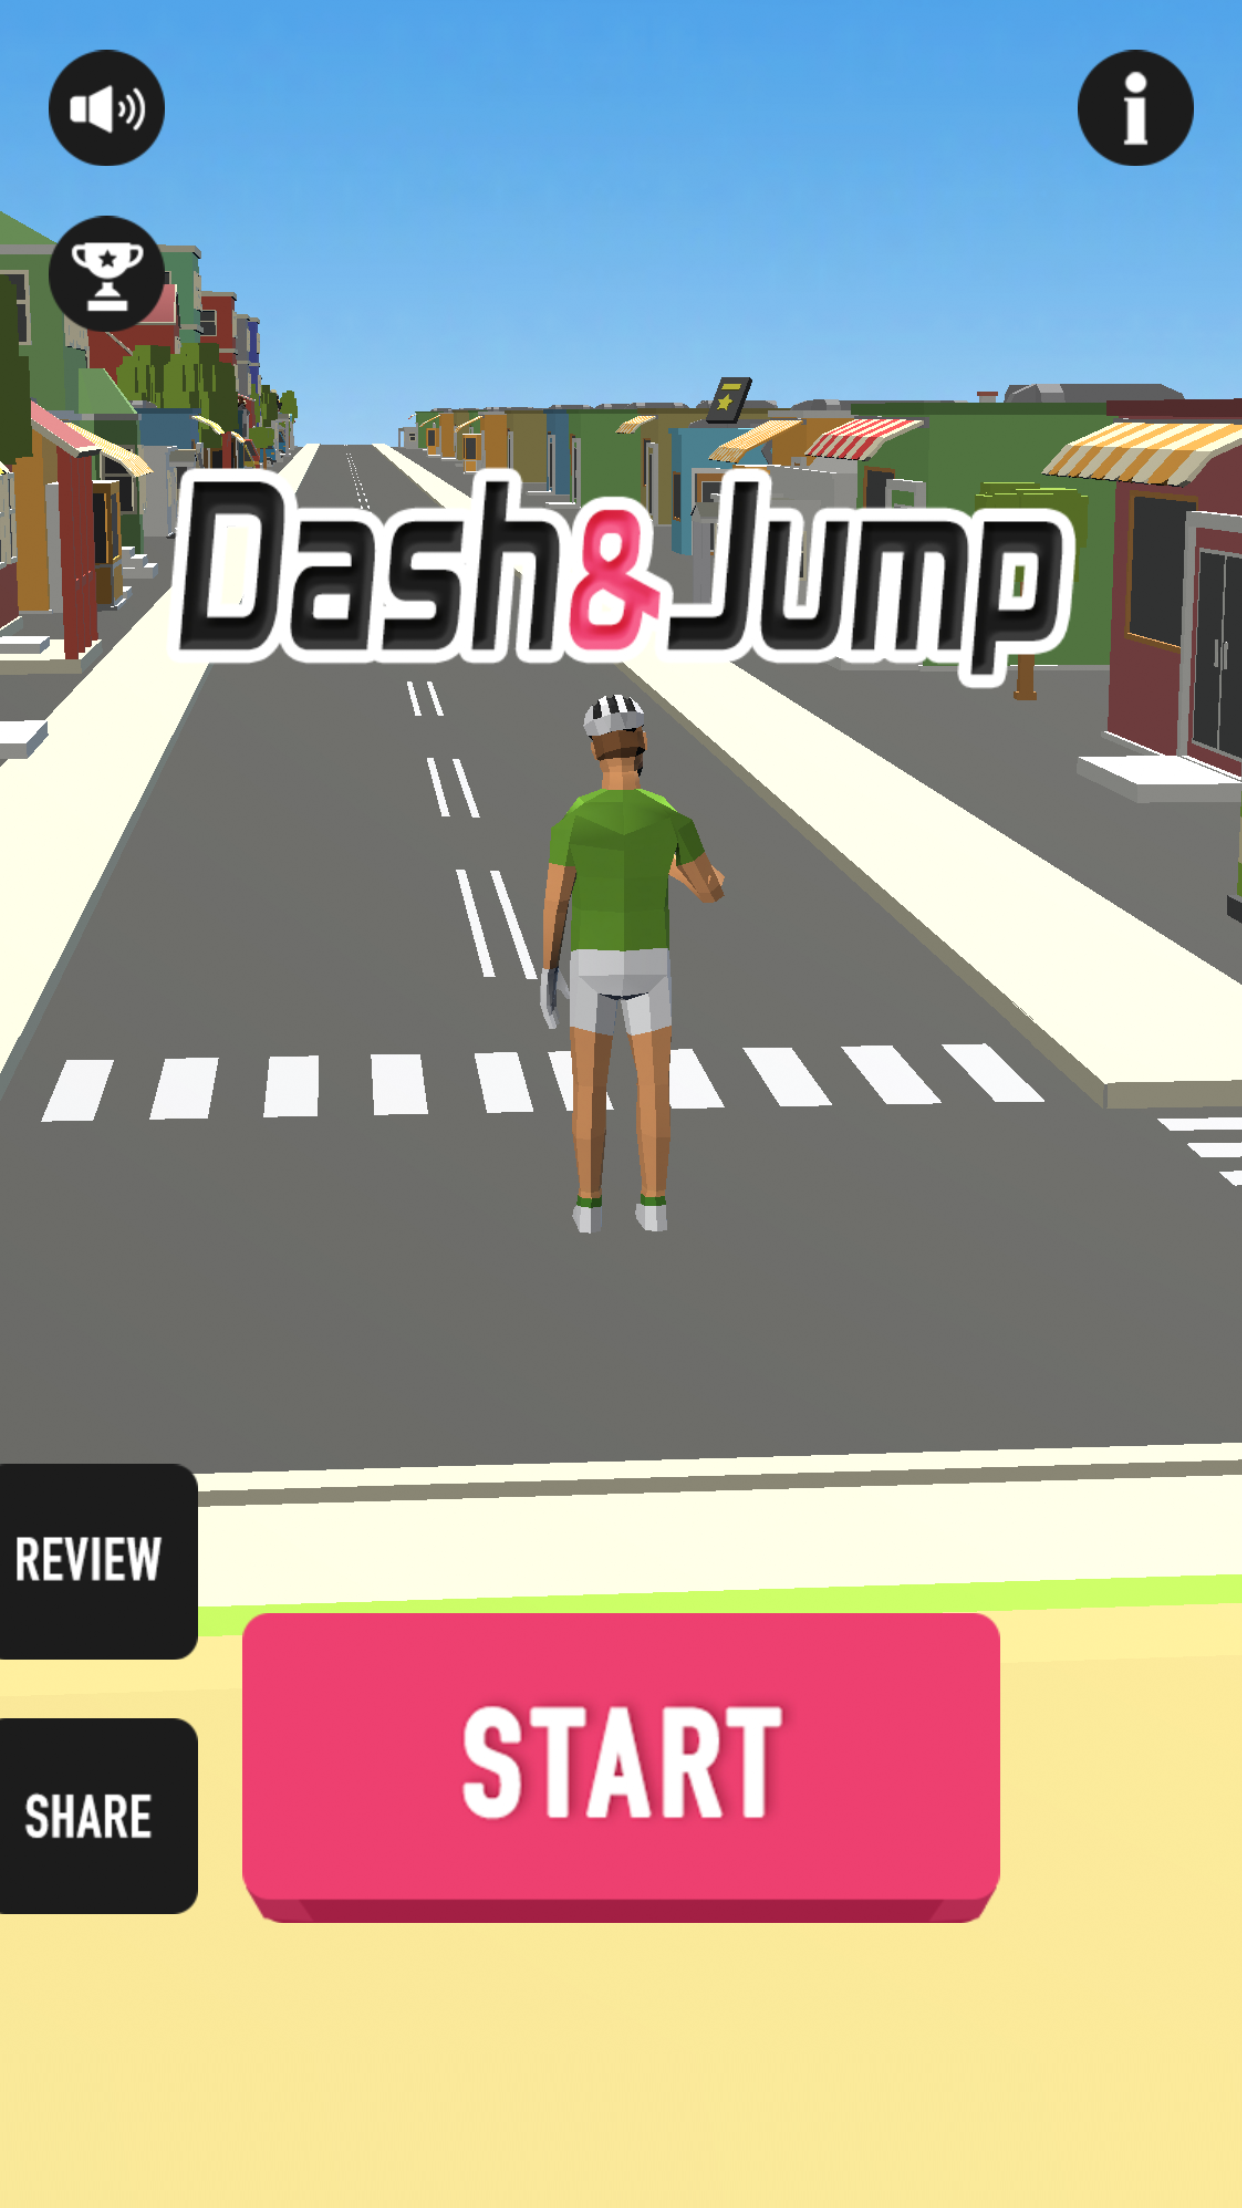 Screenshot 1 of [ဦးနှောက်လေ့ကျင့်ရေး] အချိန်ကိုသတ်ရန် Dash & Jump အခမဲ့ရောဂါရှာဖွေရေးဂိမ်း 1.0.6